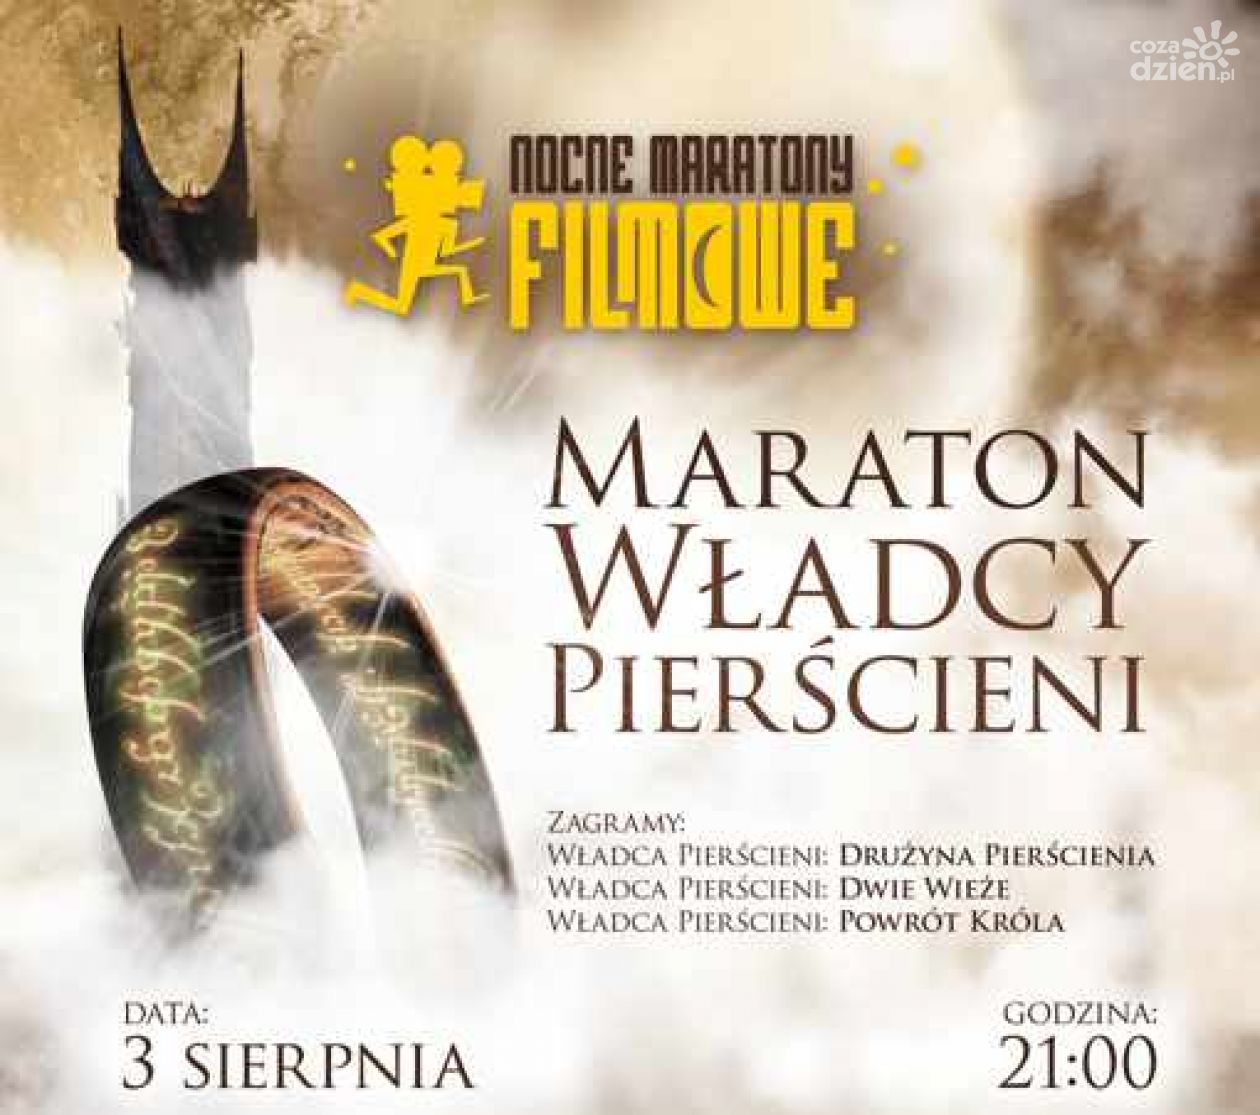 Maraton Władcy Pierścieni - 12 godzin